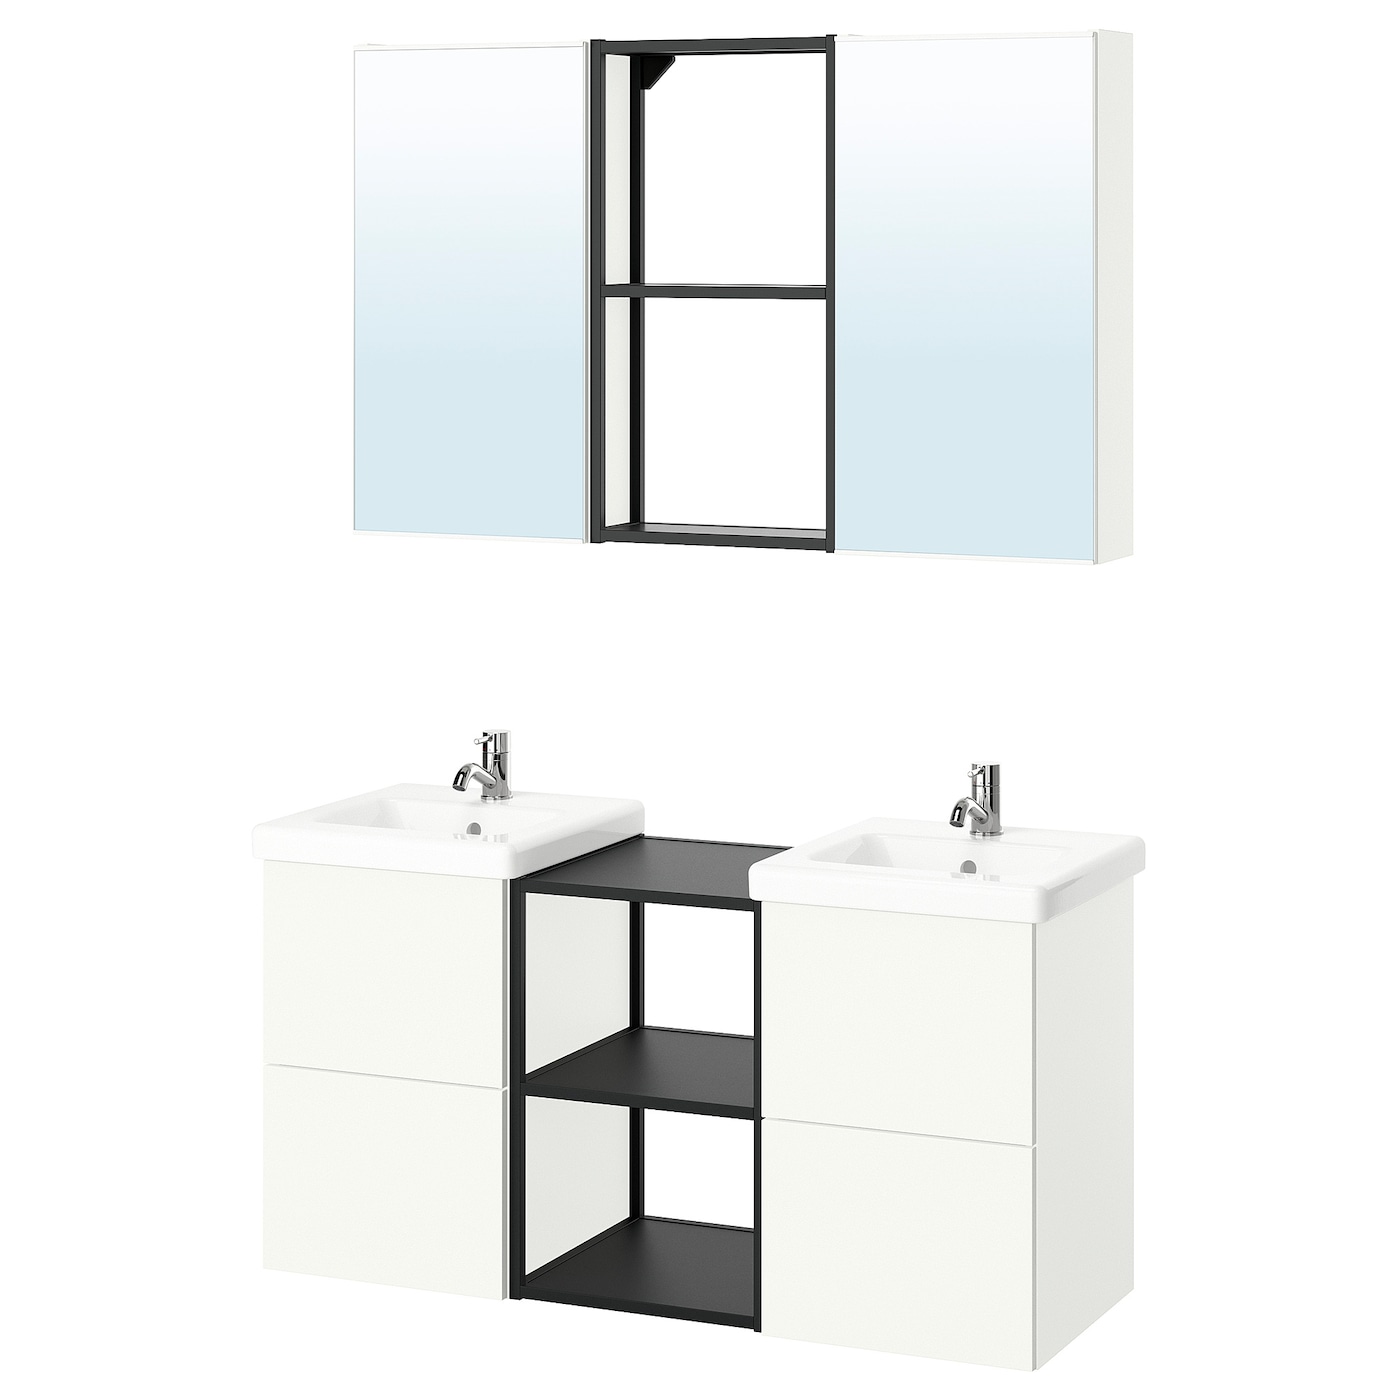 Комбинация для ванной - IKEA ENHET, 124х43х65 см, белый/антрацит, ЭНХЕТ ИКЕА